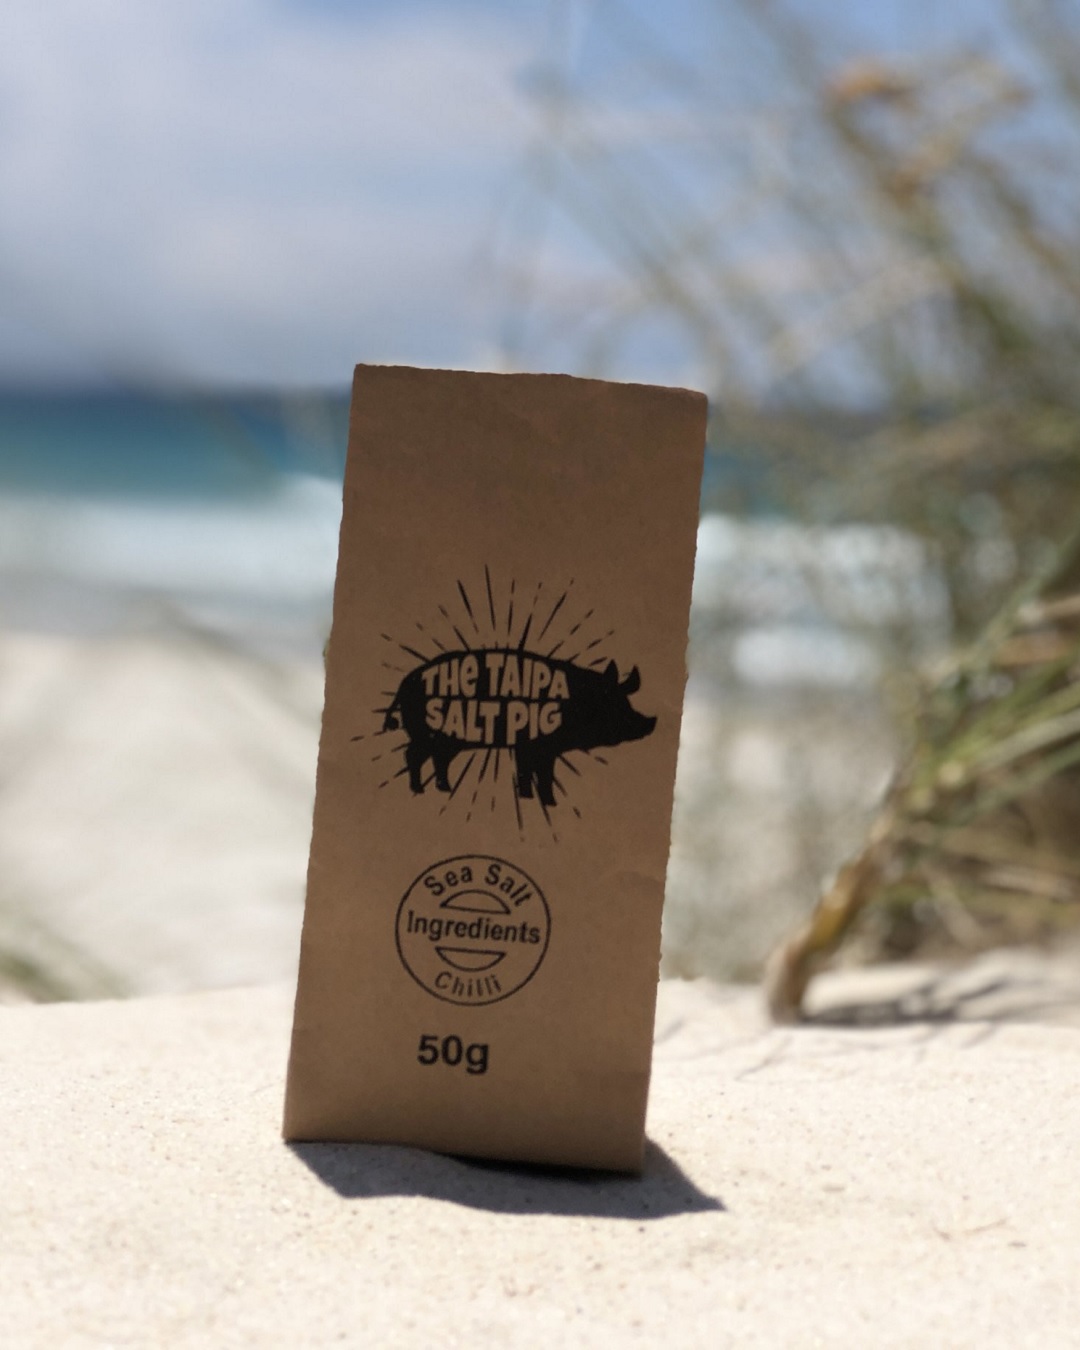 50g bag of Taipa pig chilli salt on sand on the beach